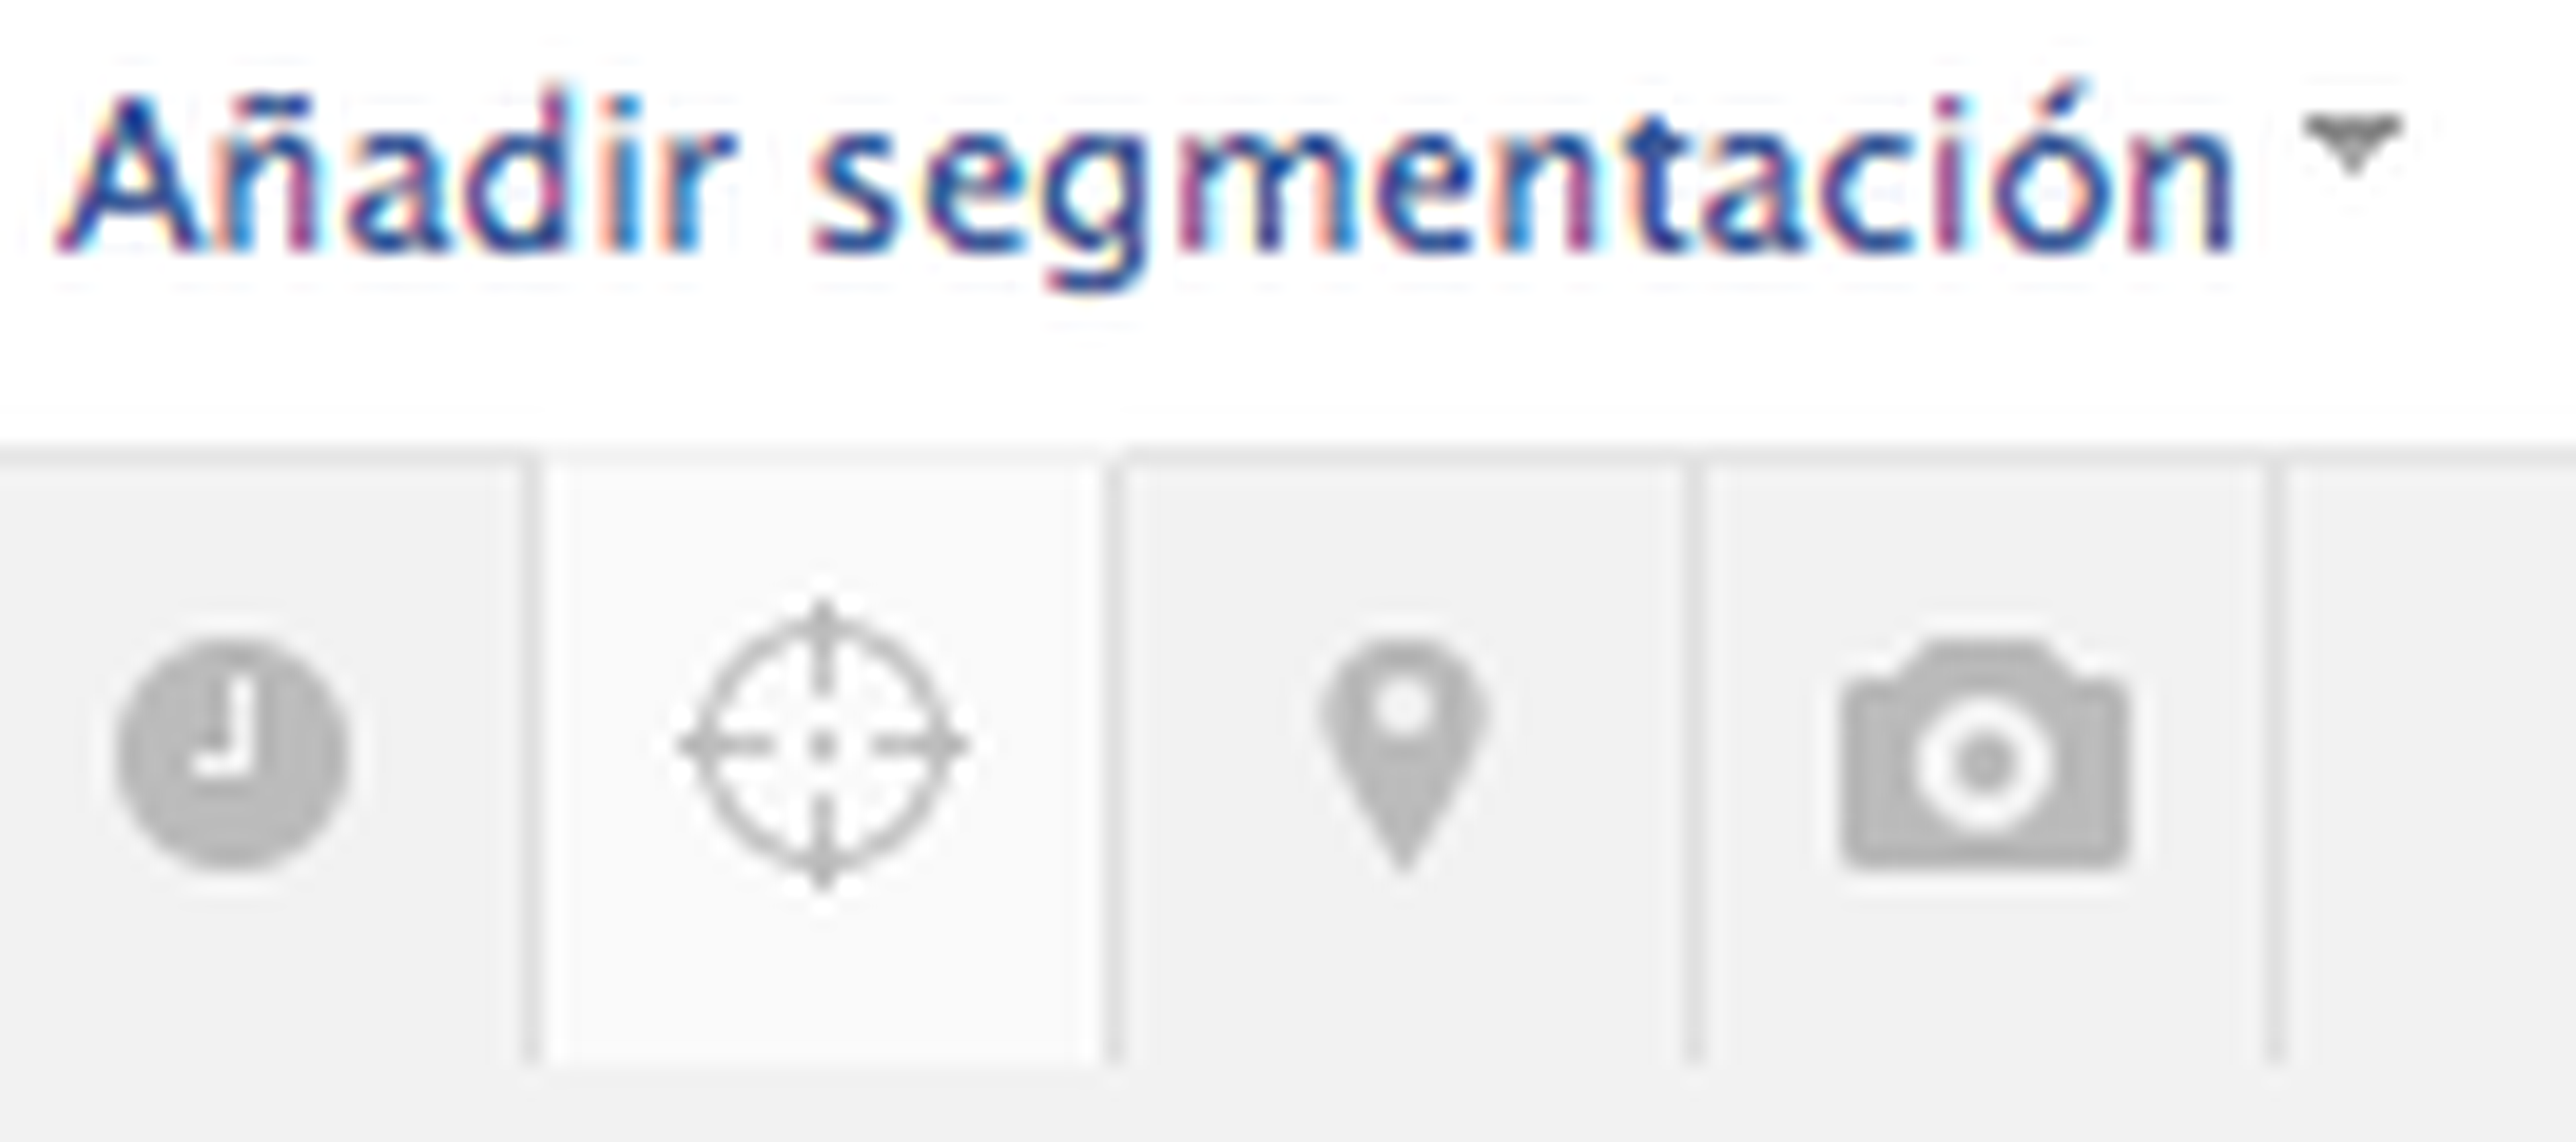 Añadir segmentación en Facebook